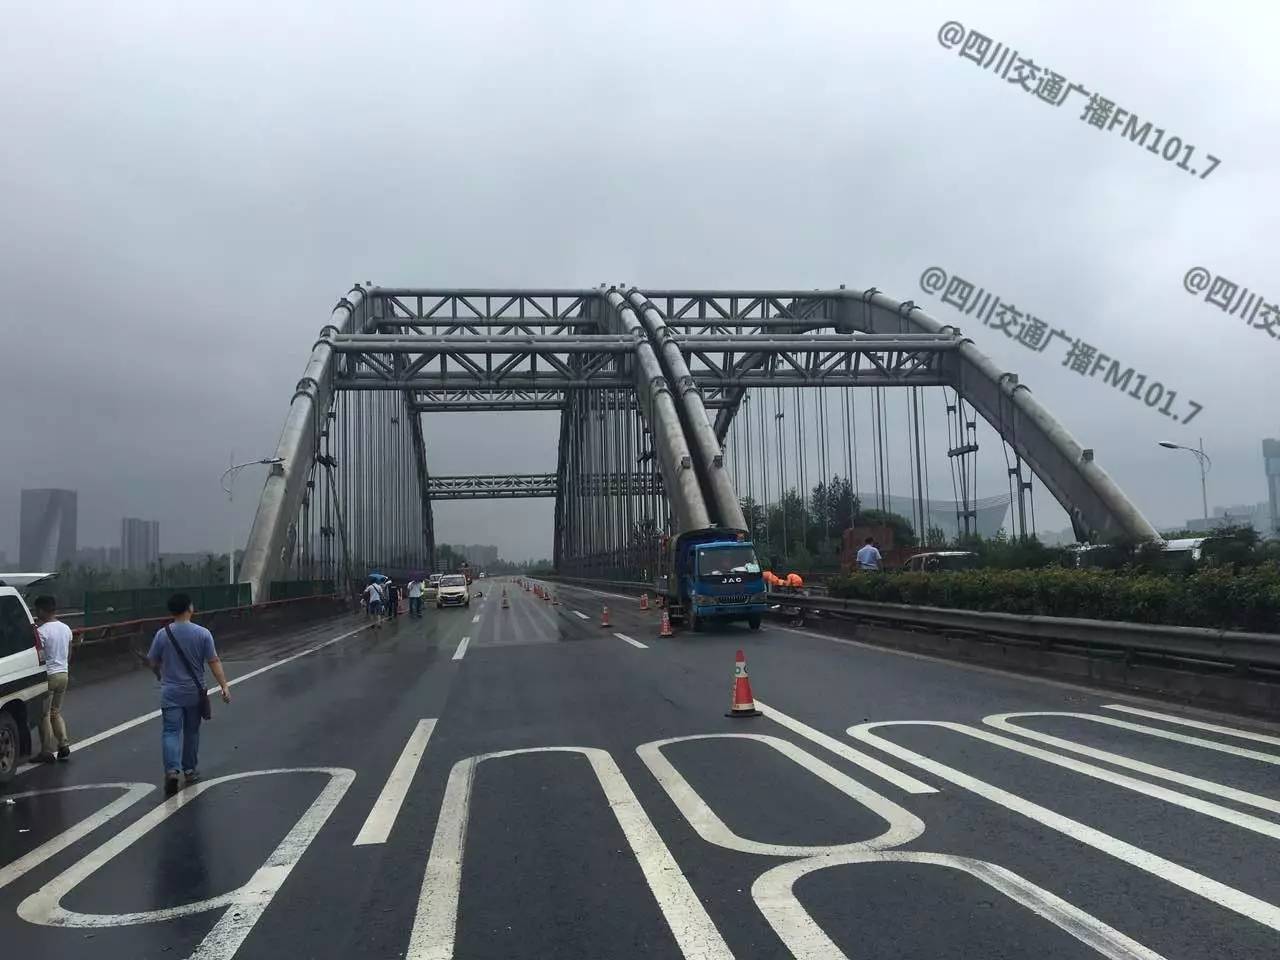 【关注】成都g4201绕城高速府河大桥被撞损,交通恢复时间暂时无法确定